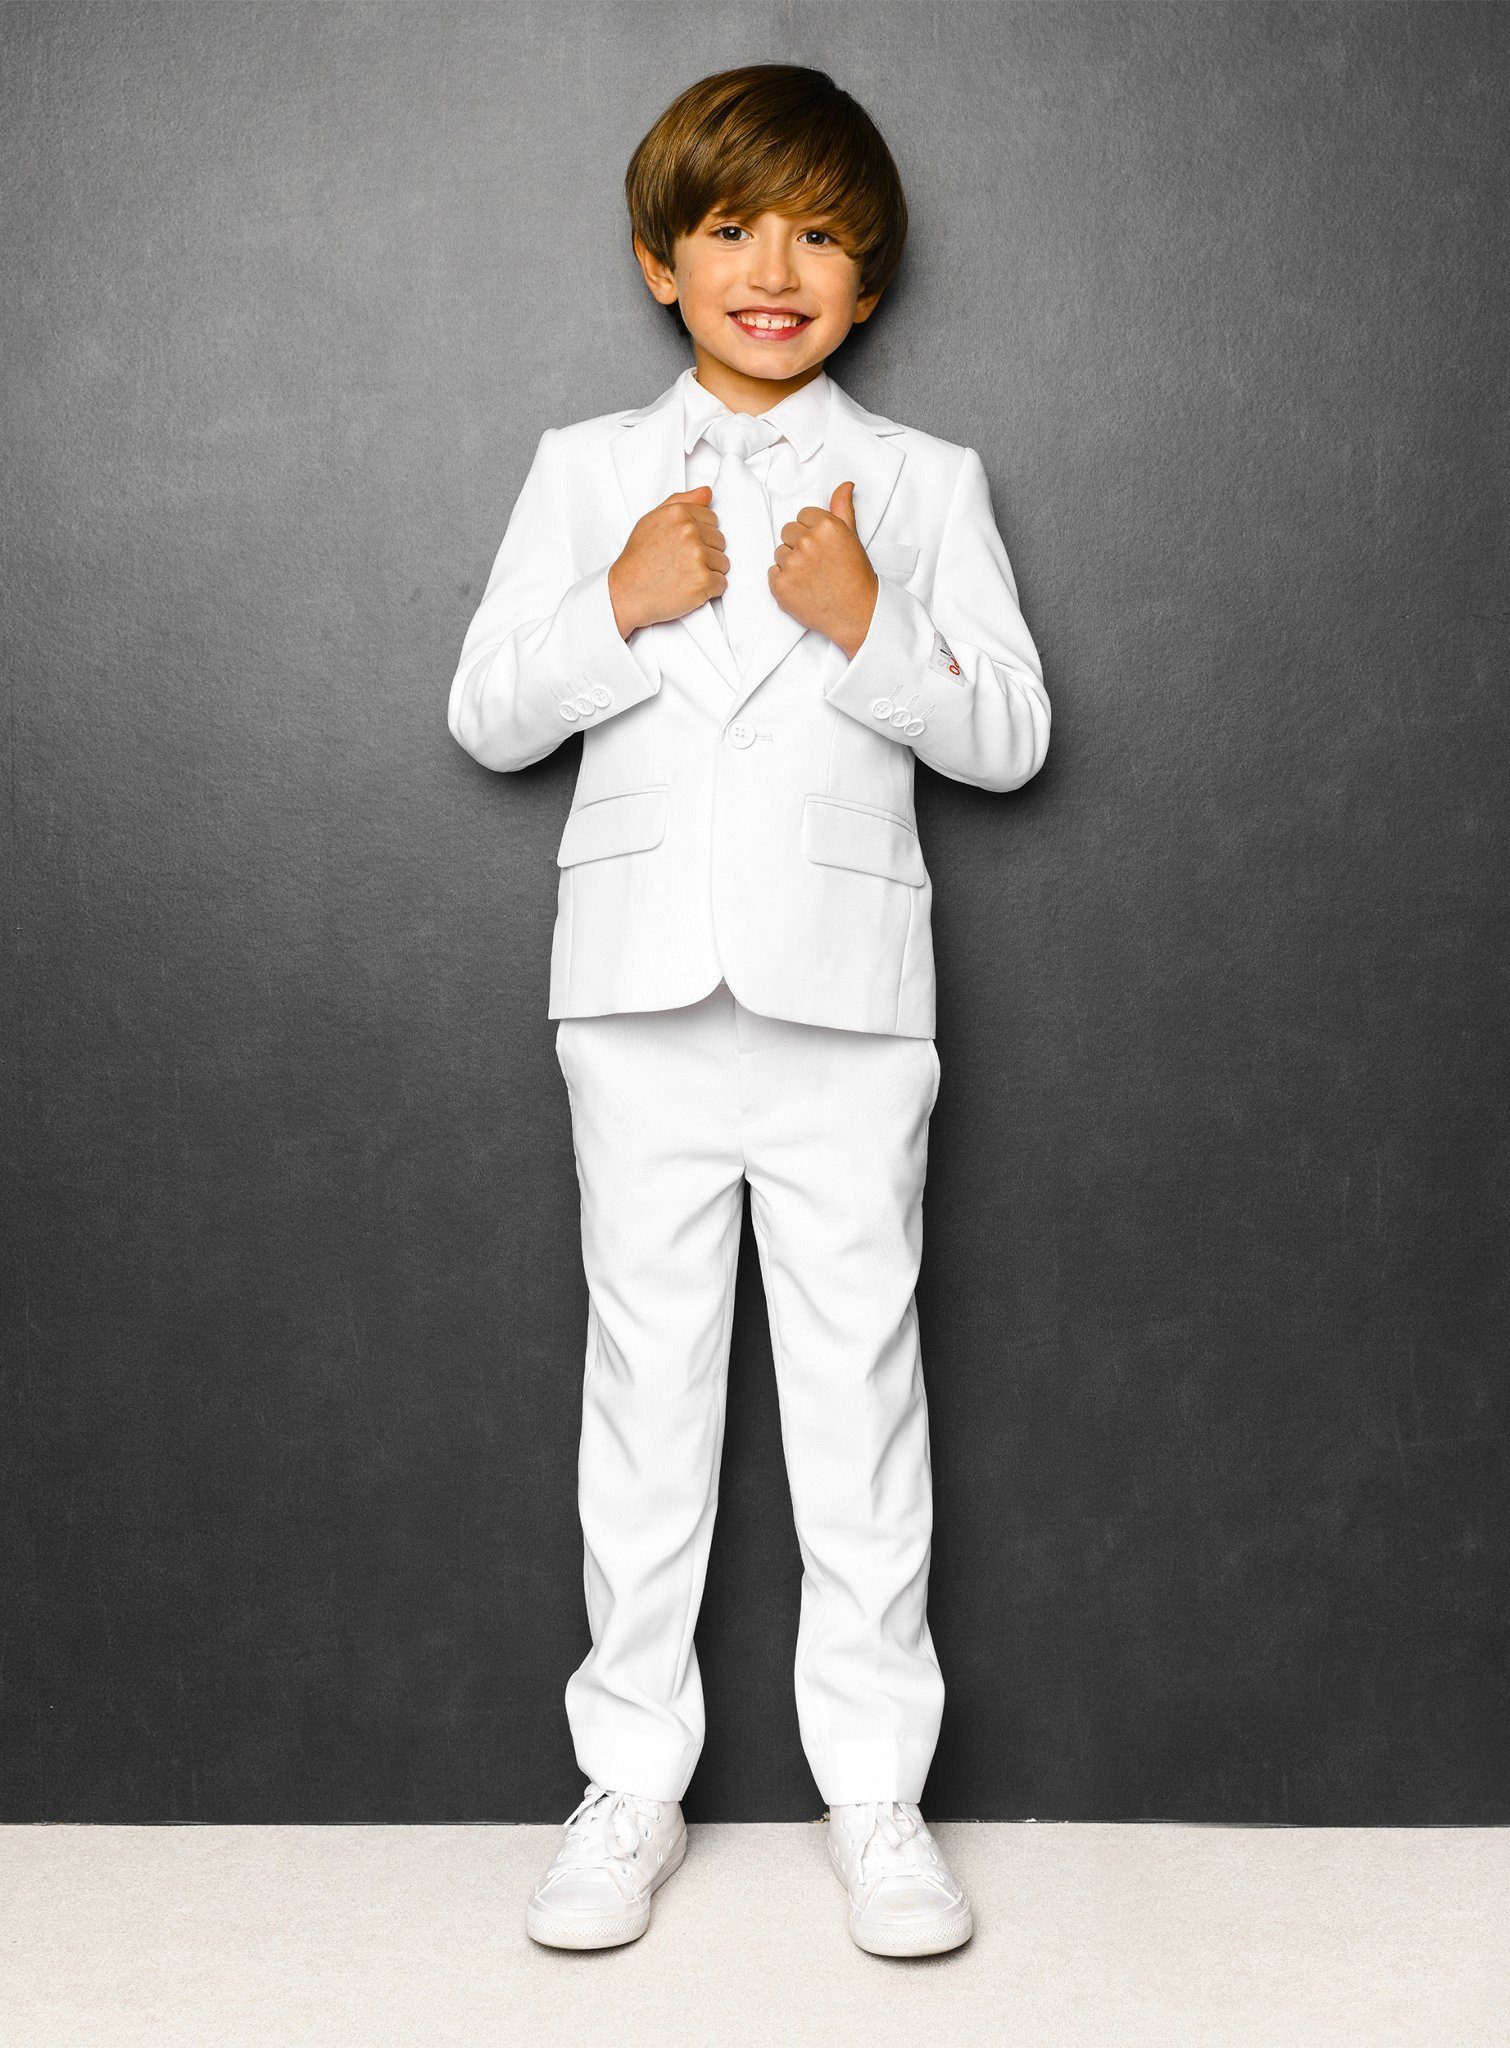 Opposuits Kinderanzug Boys White Knight Cooler Anzug für coole Kids